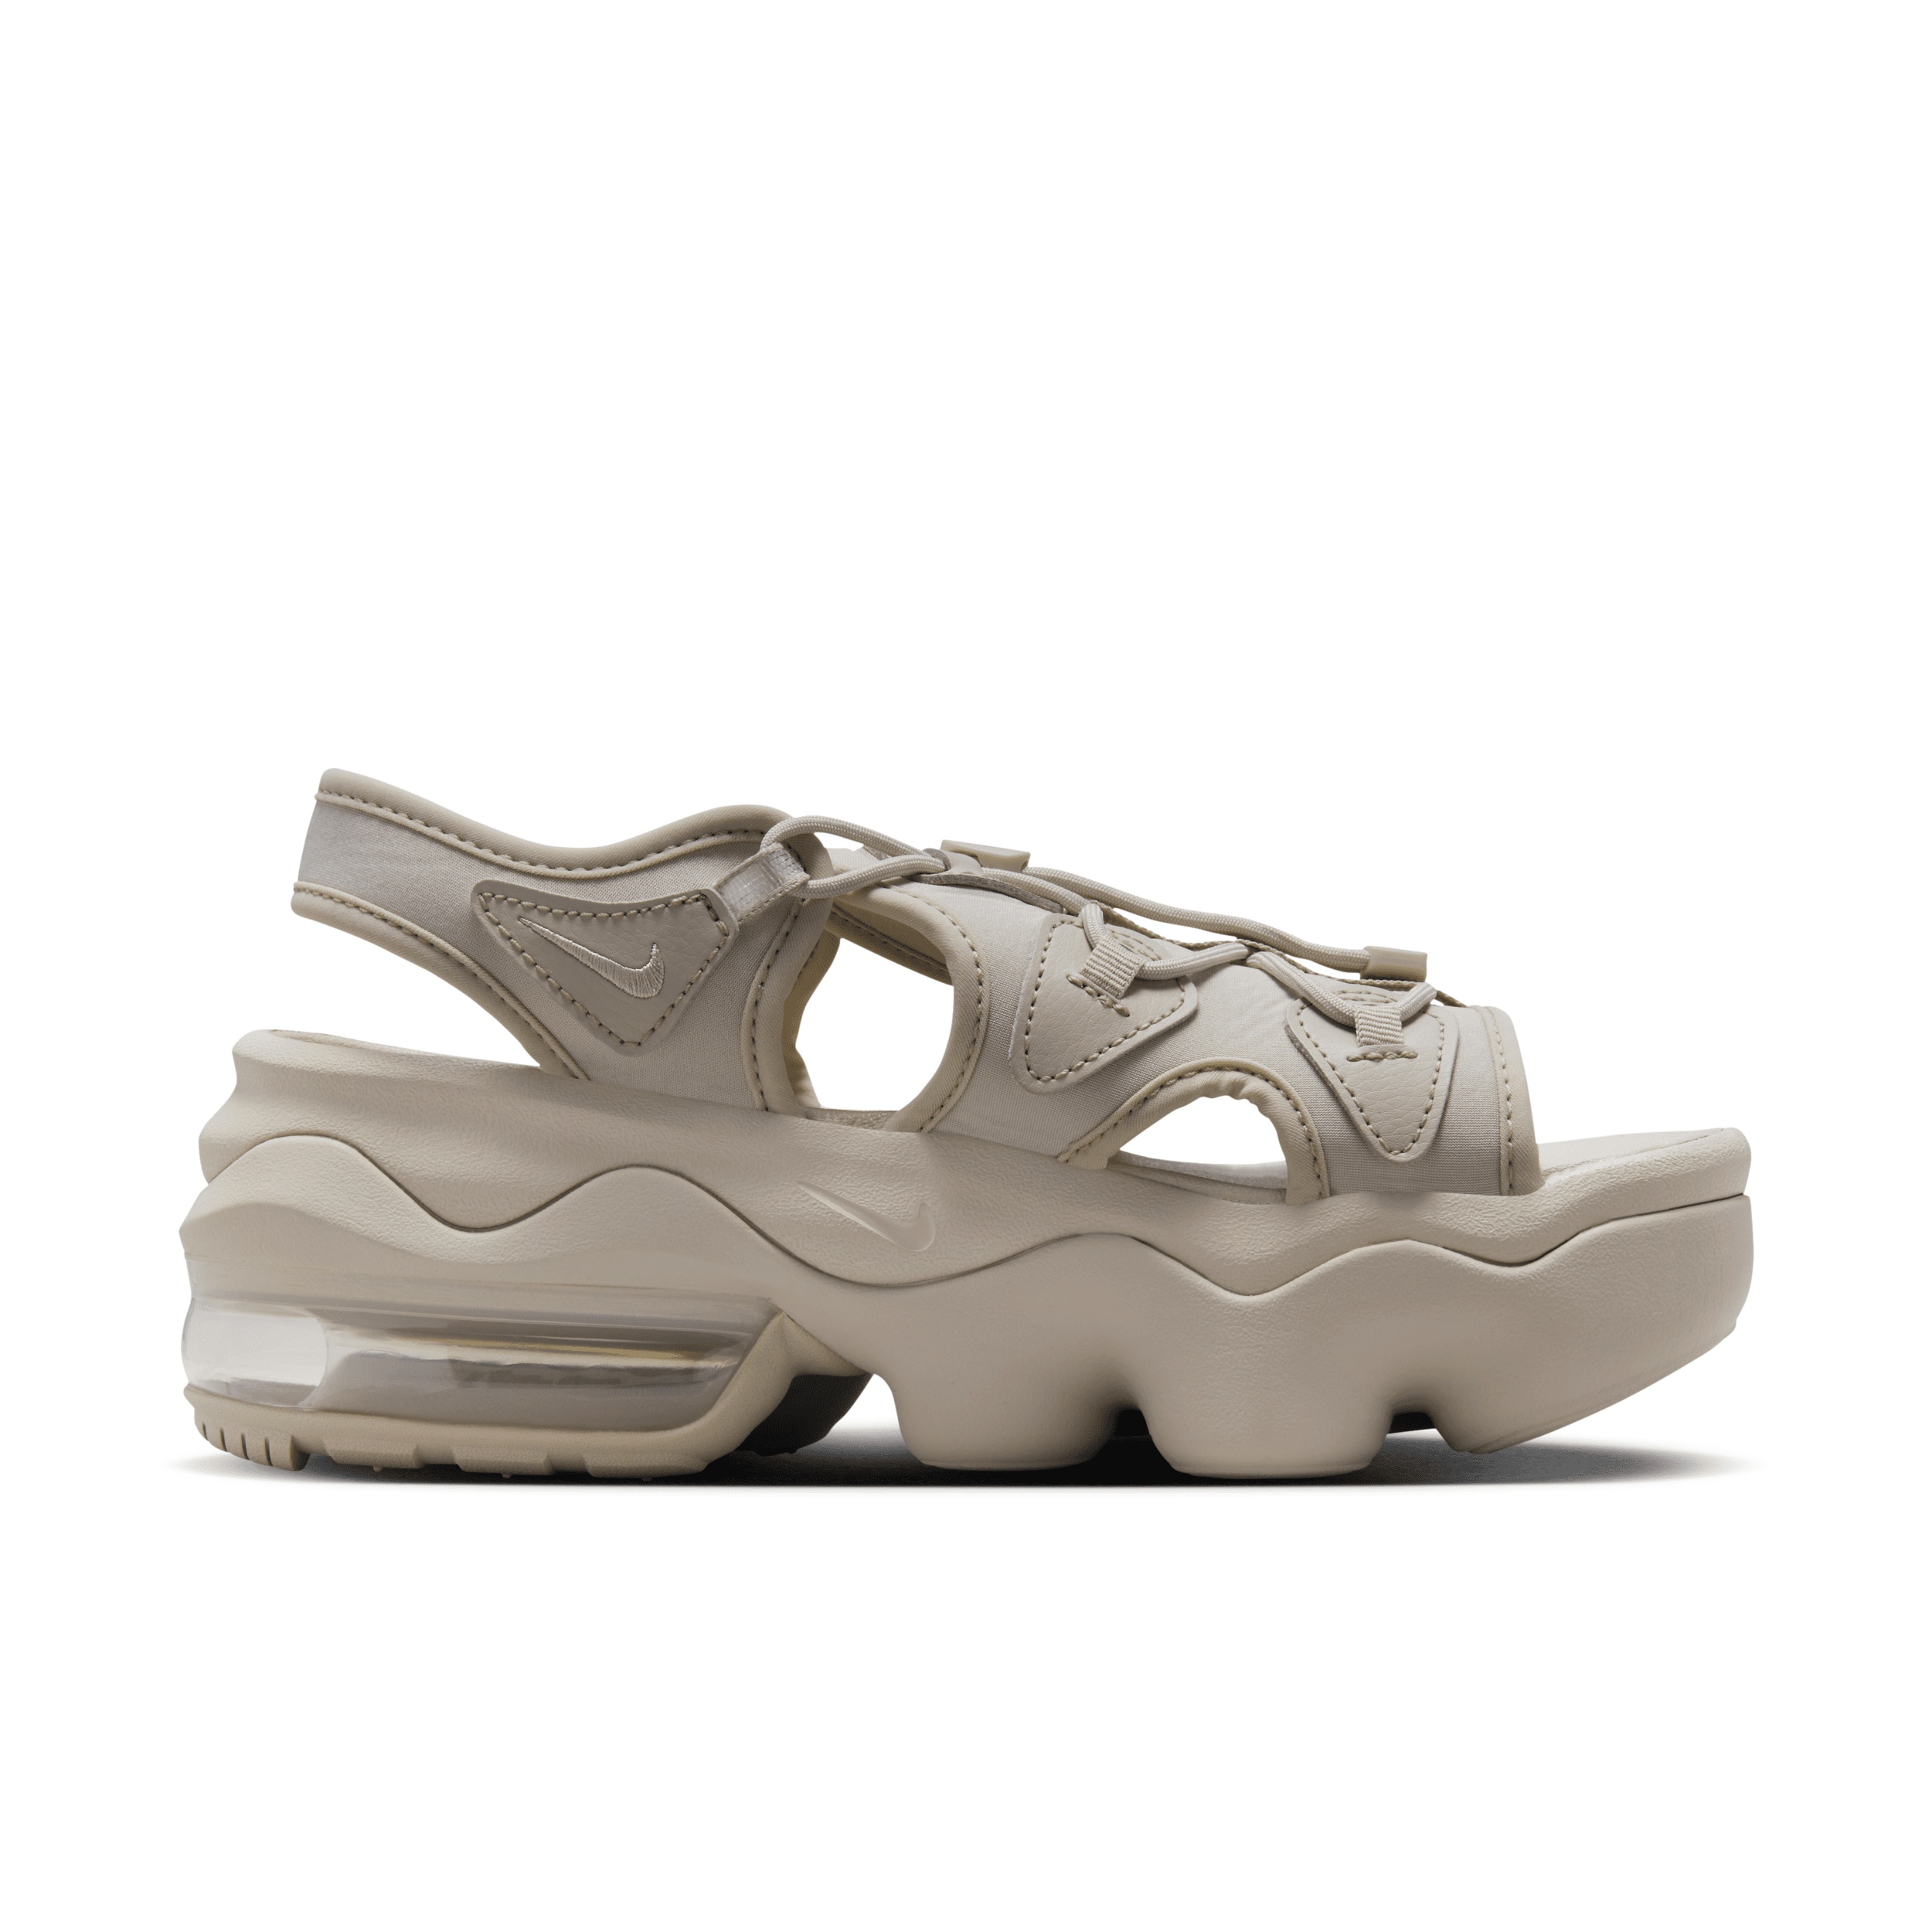 Nike Women's Air Max Koko Sandals - 4